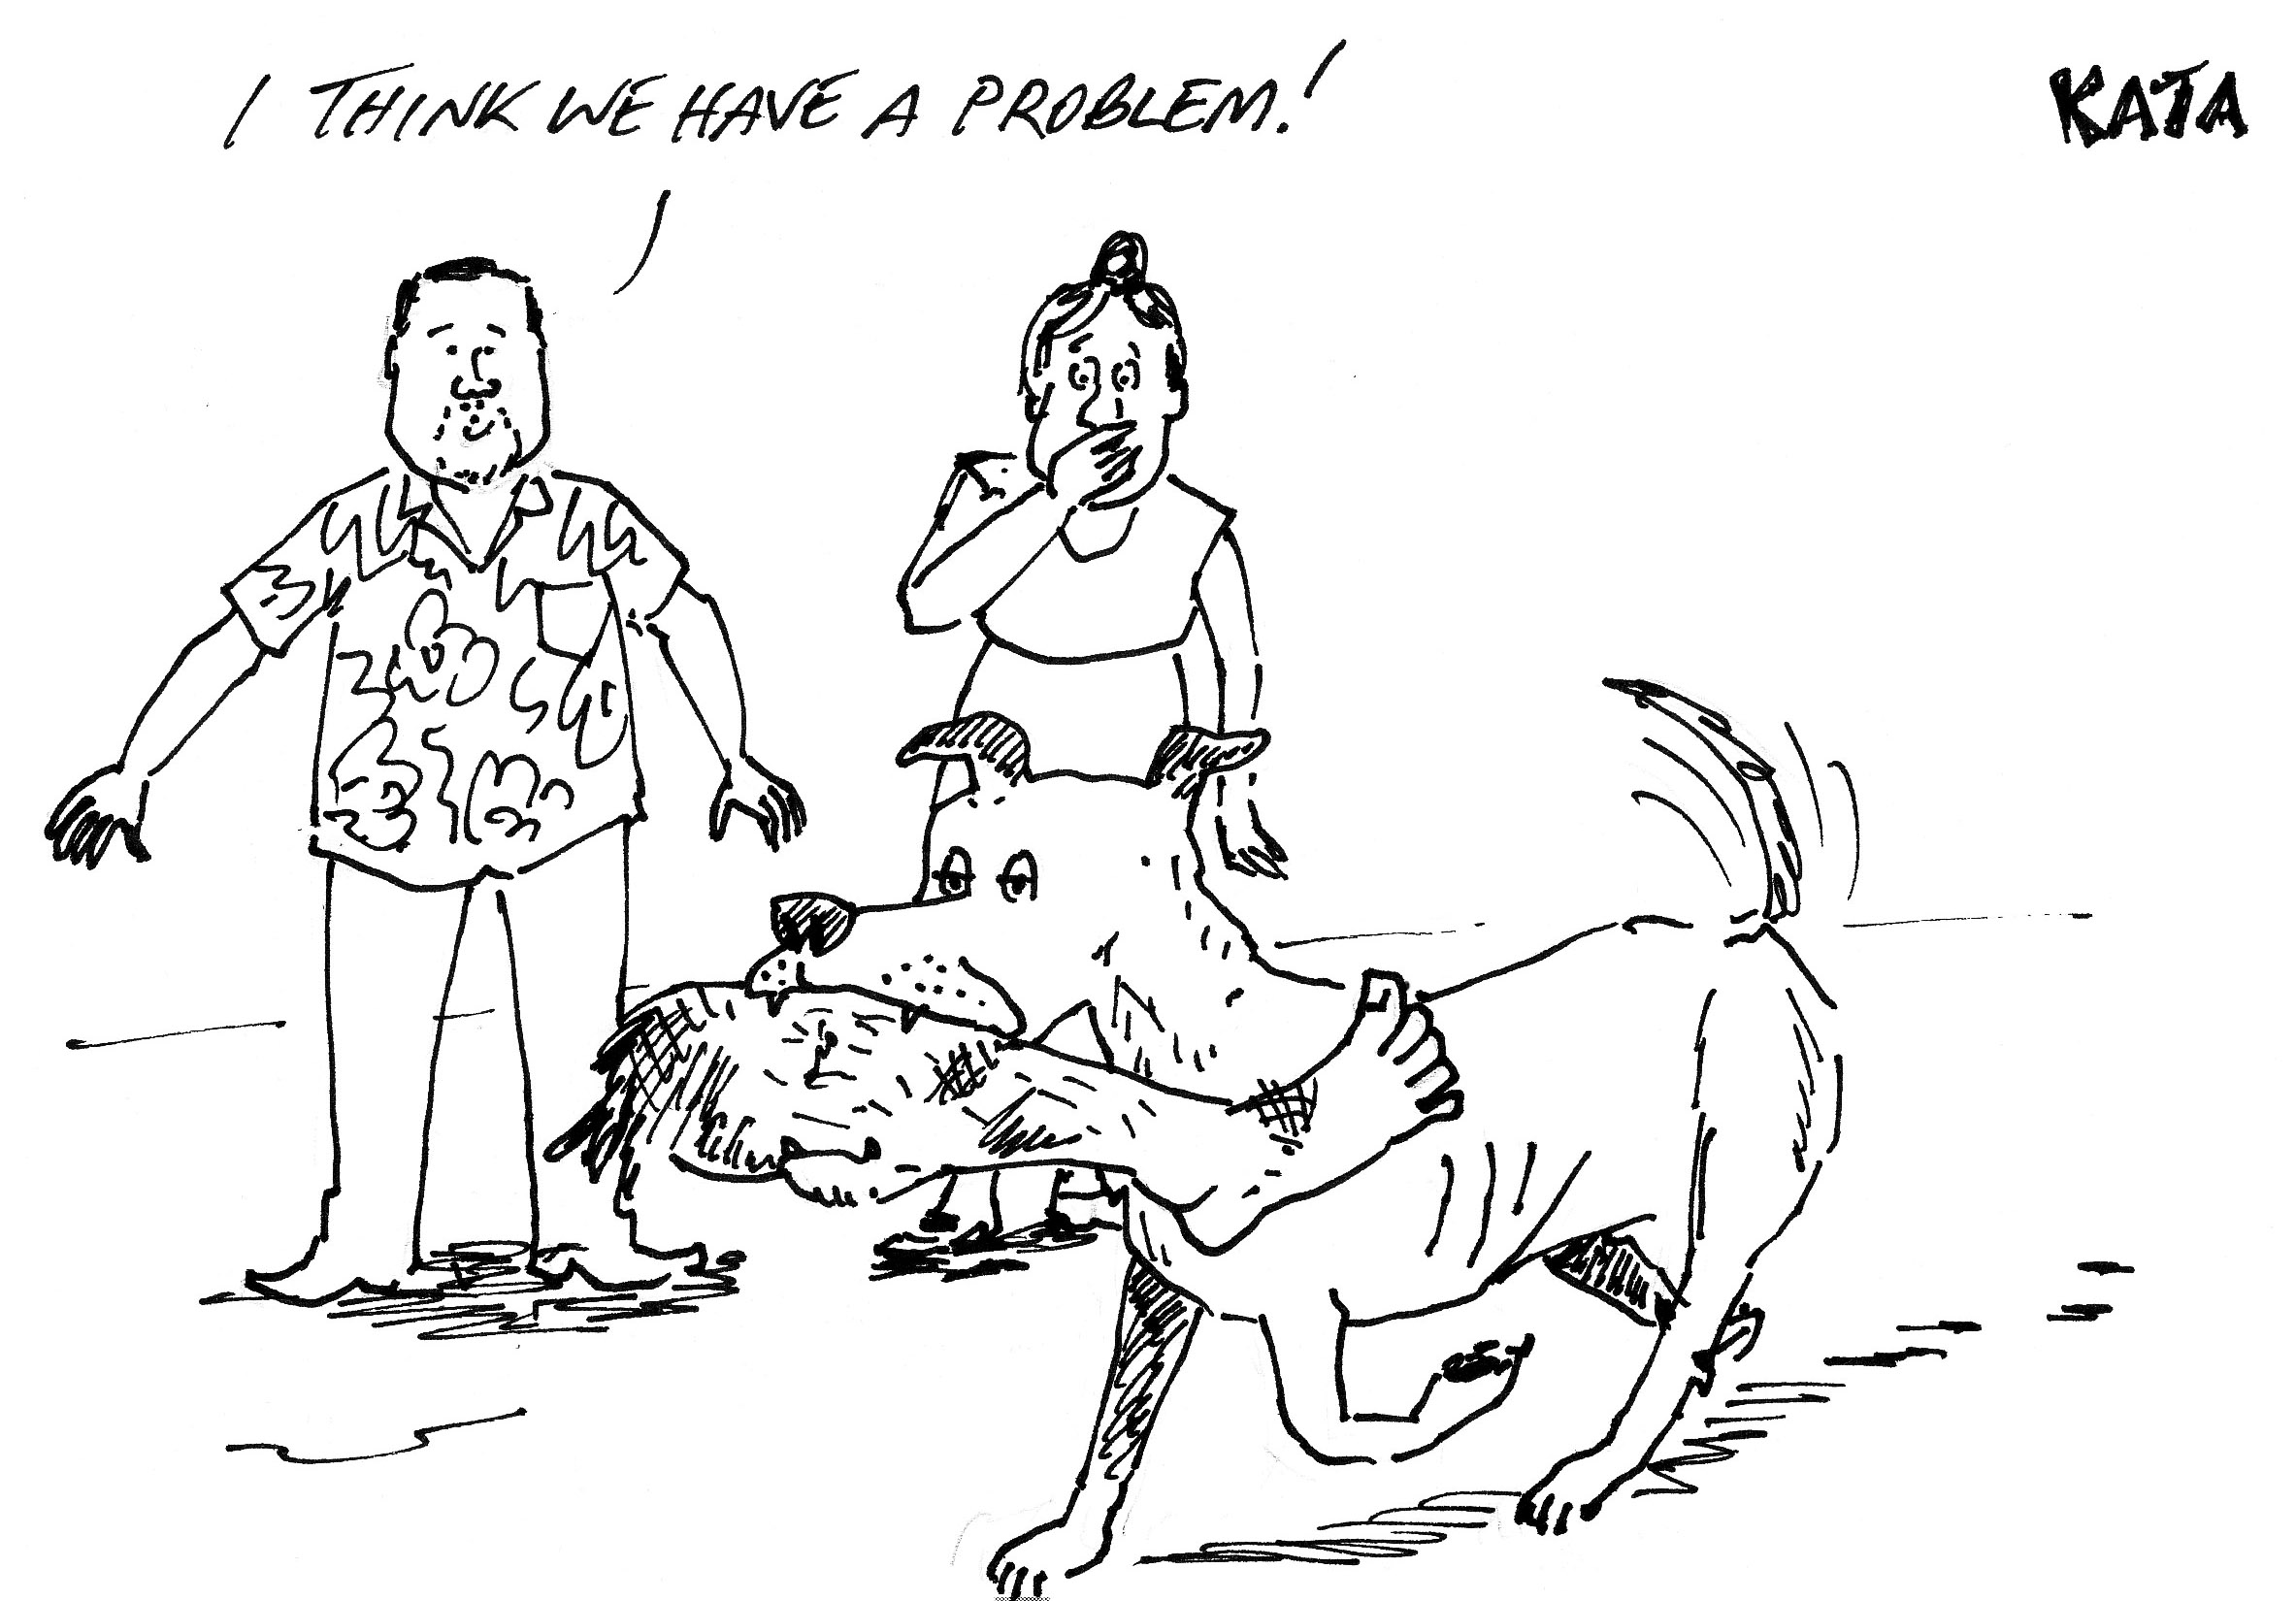 Kata: Dogs vs people